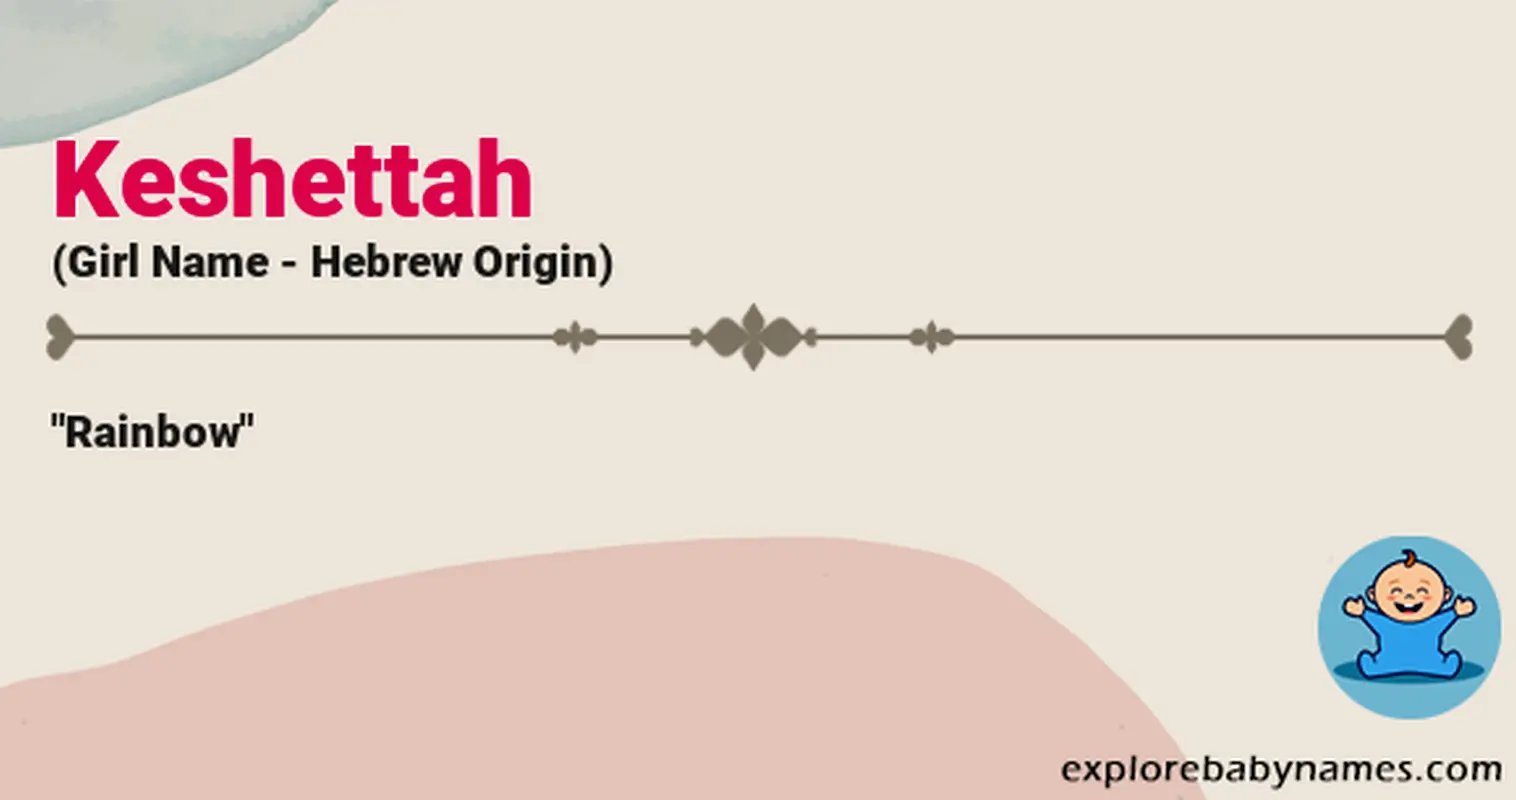 Meaning of Keshettah